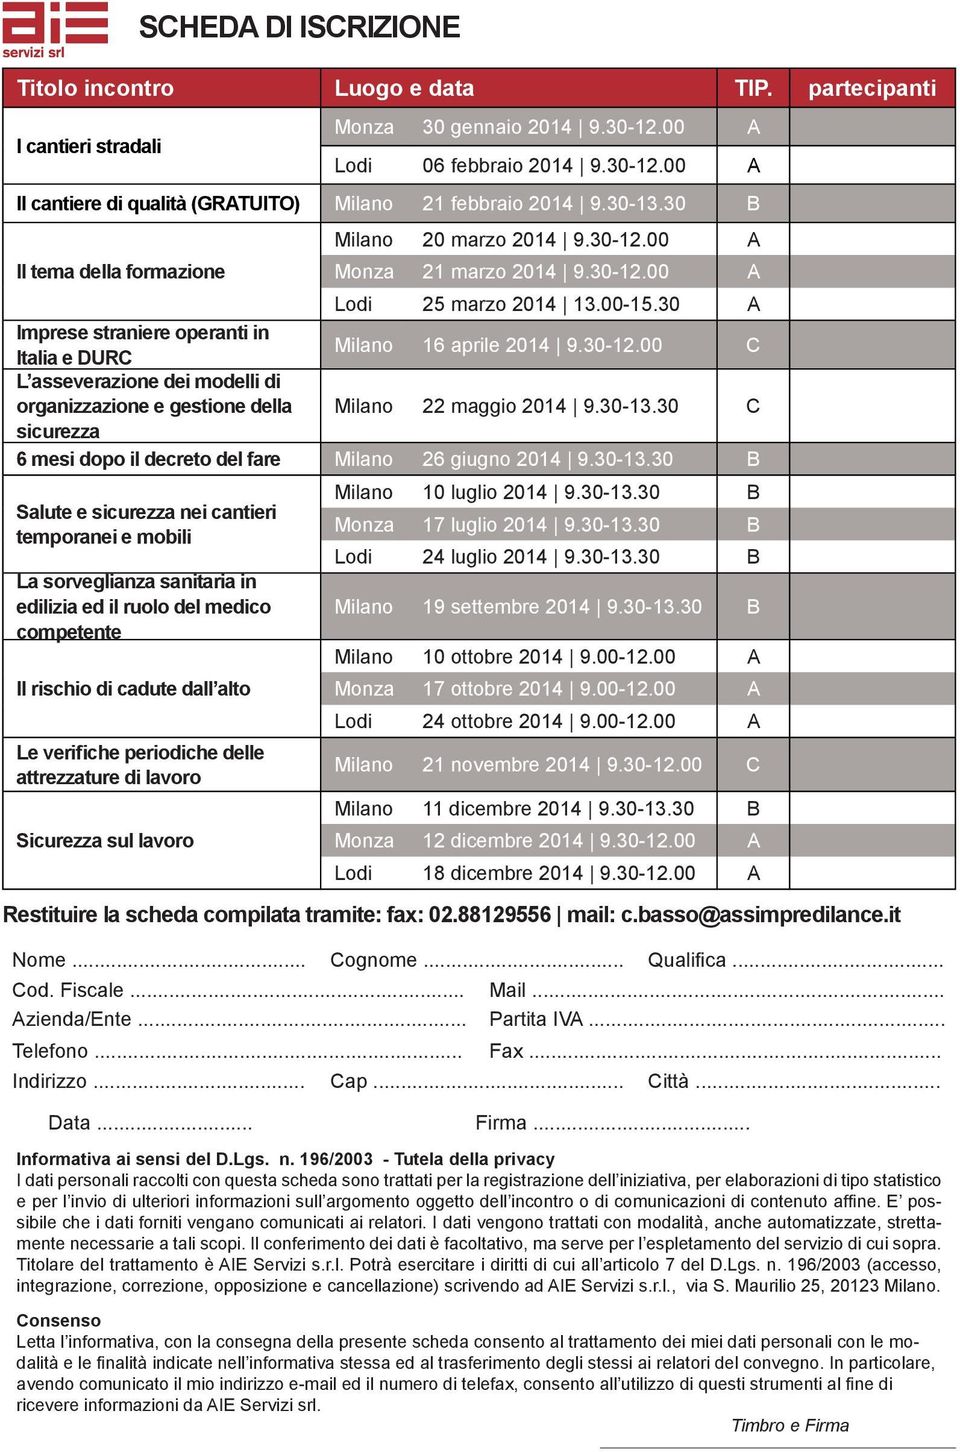 30 A Imprese straniere operanti in Italia e DURC Milano 16 aprile 2014 9.30-12.00 C L asseverazione dei modelli di organizzazione e gestione della Milano 22 maggio 2014 9.30-13.